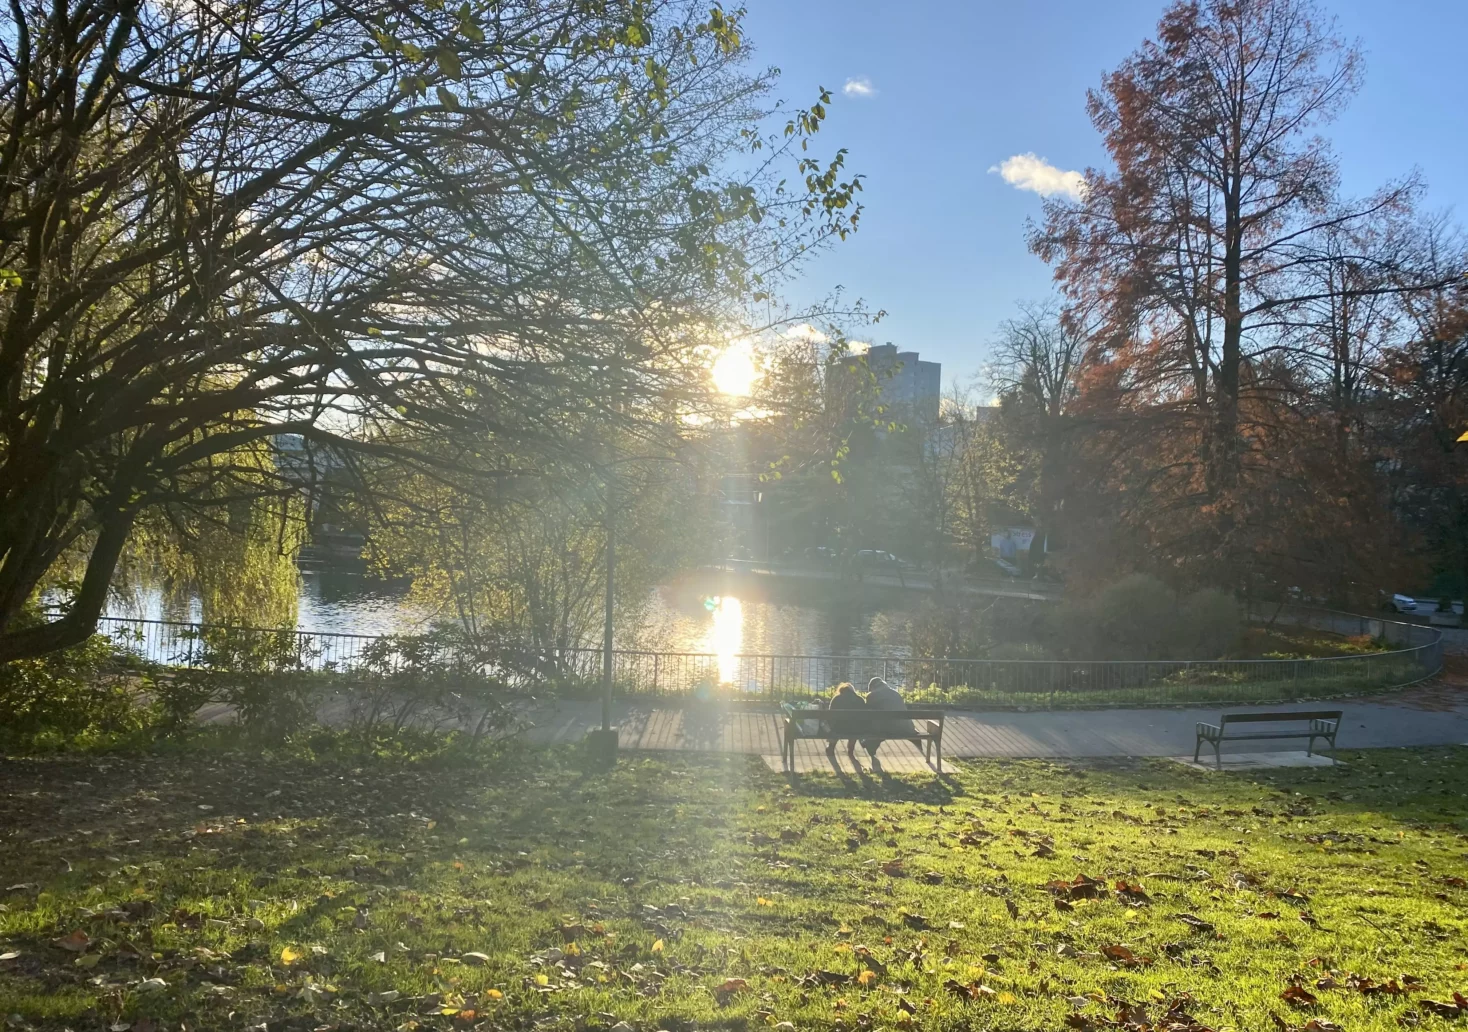 Bild auf 5min.at zeigt die Kulisse rund um einen Teich im Herbst.